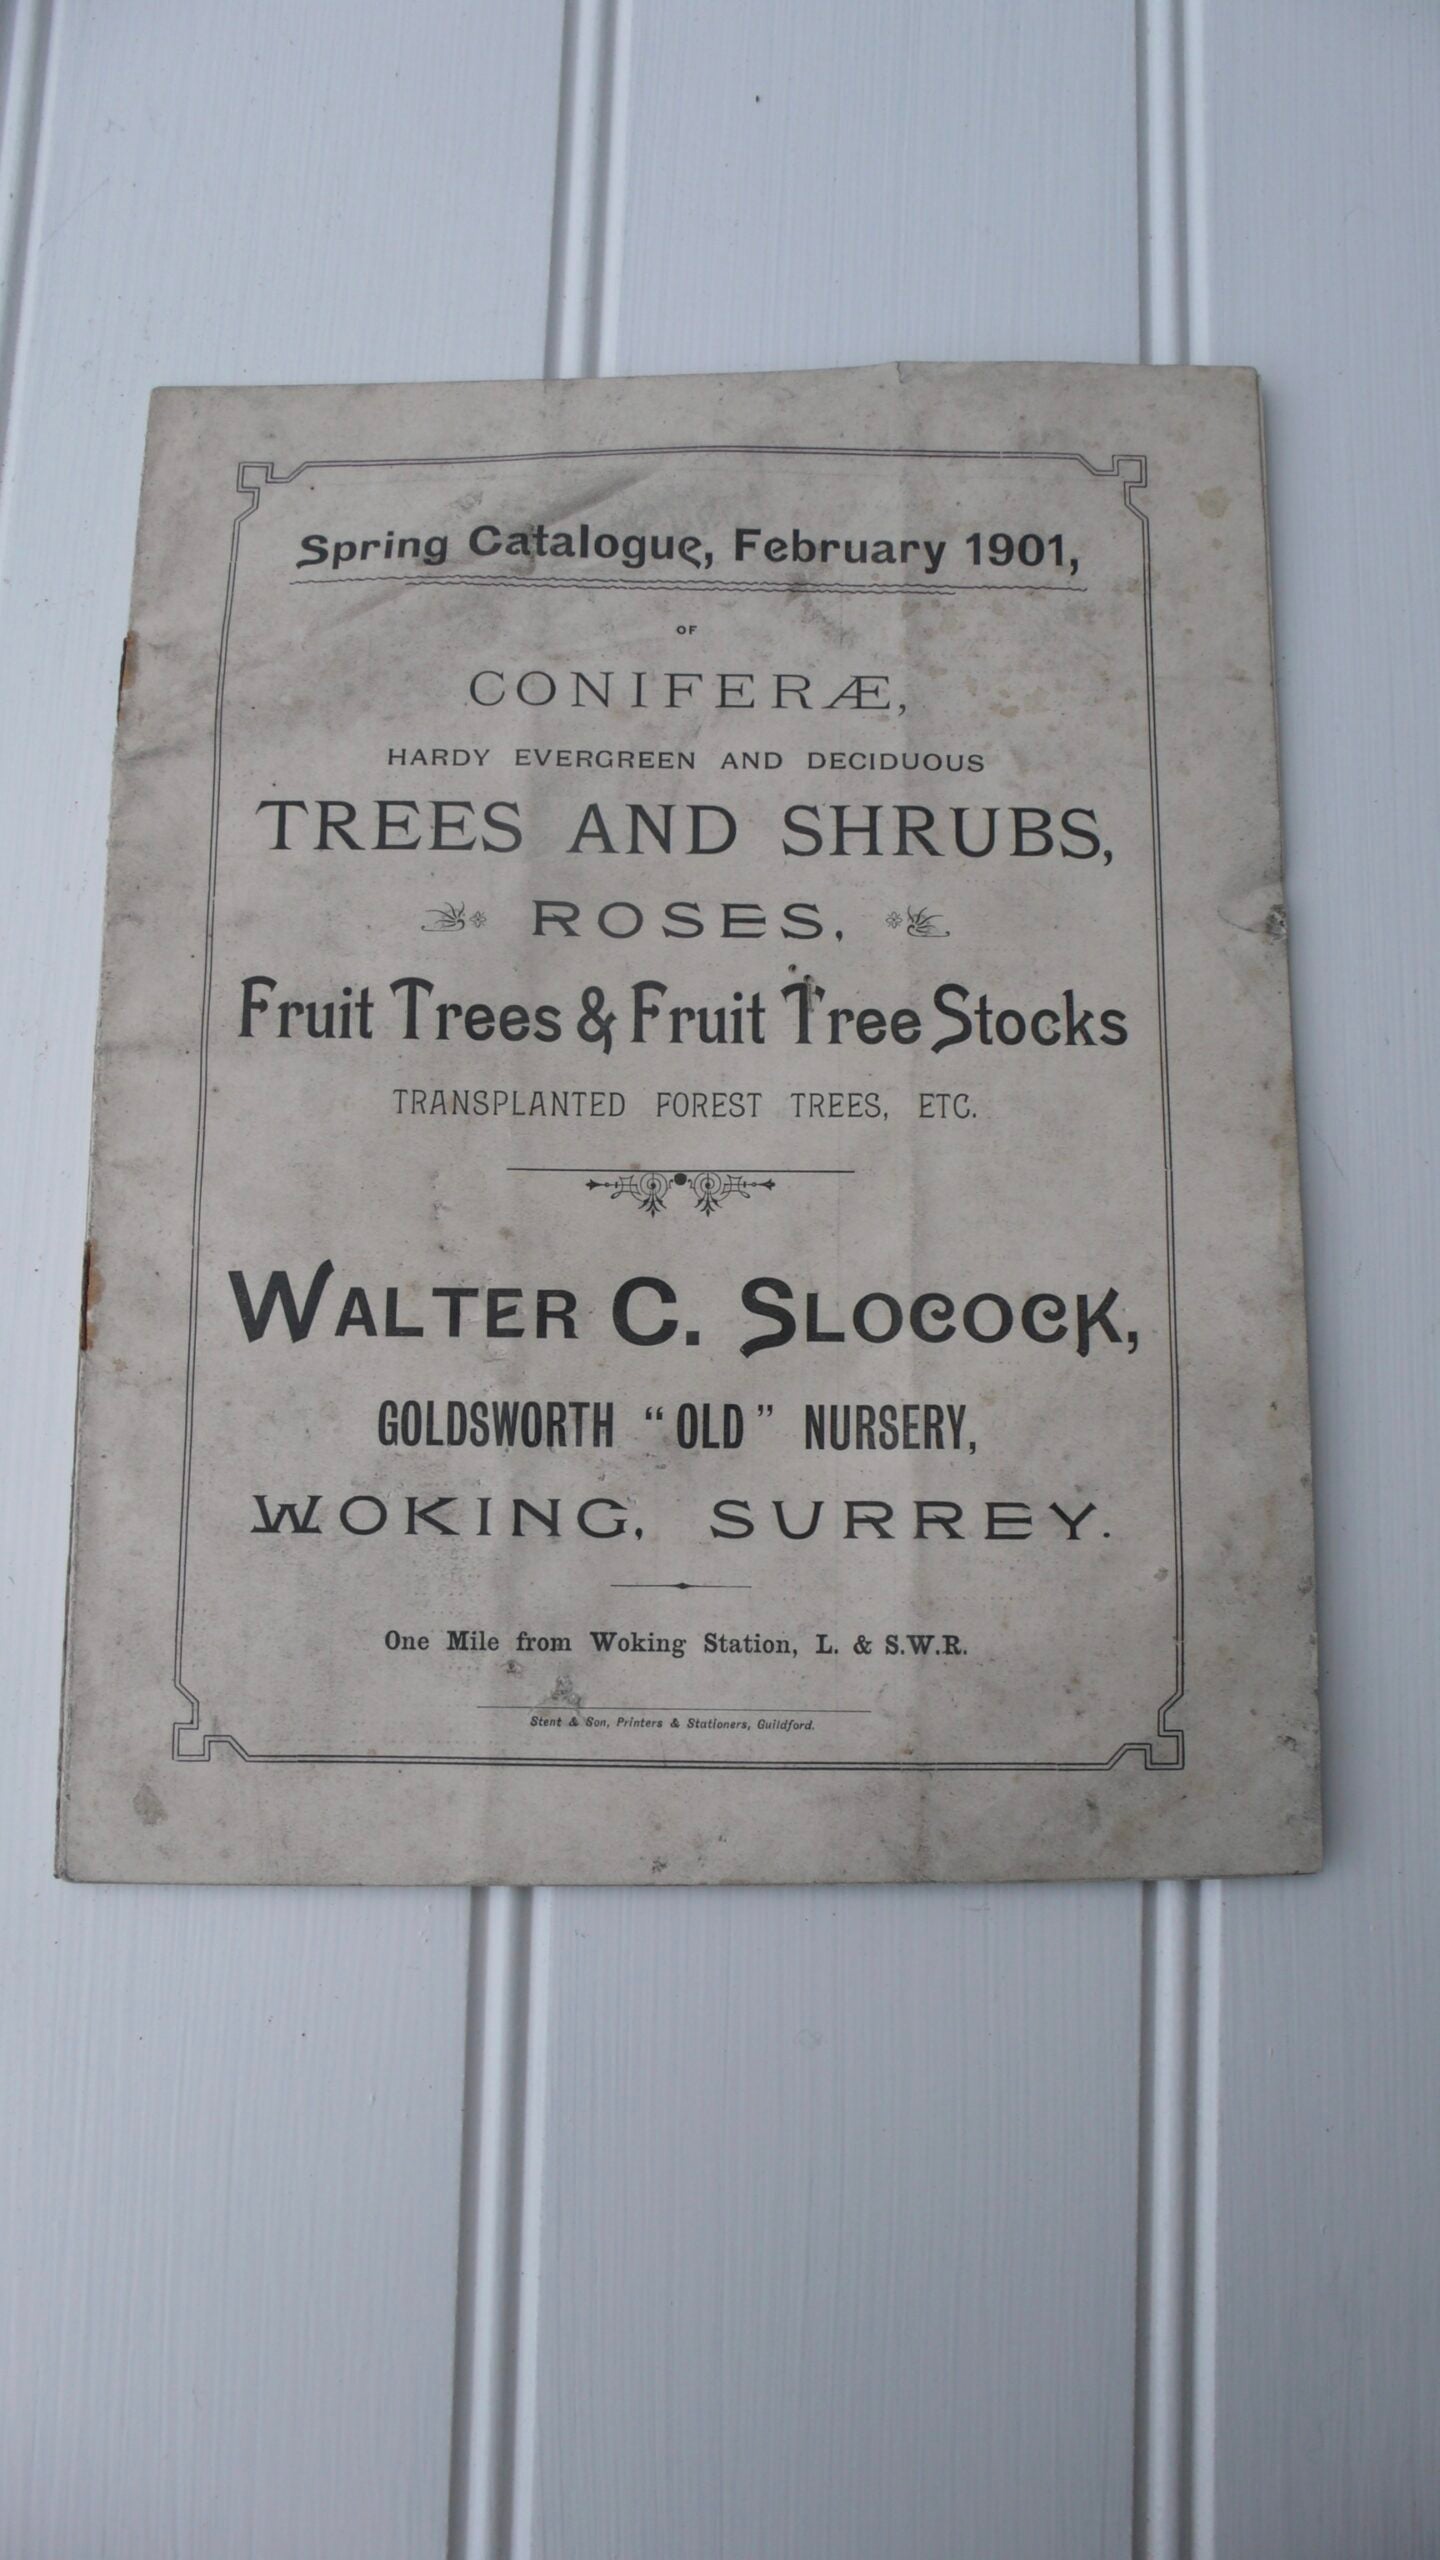 Walter Slocock Nursery Catalogue